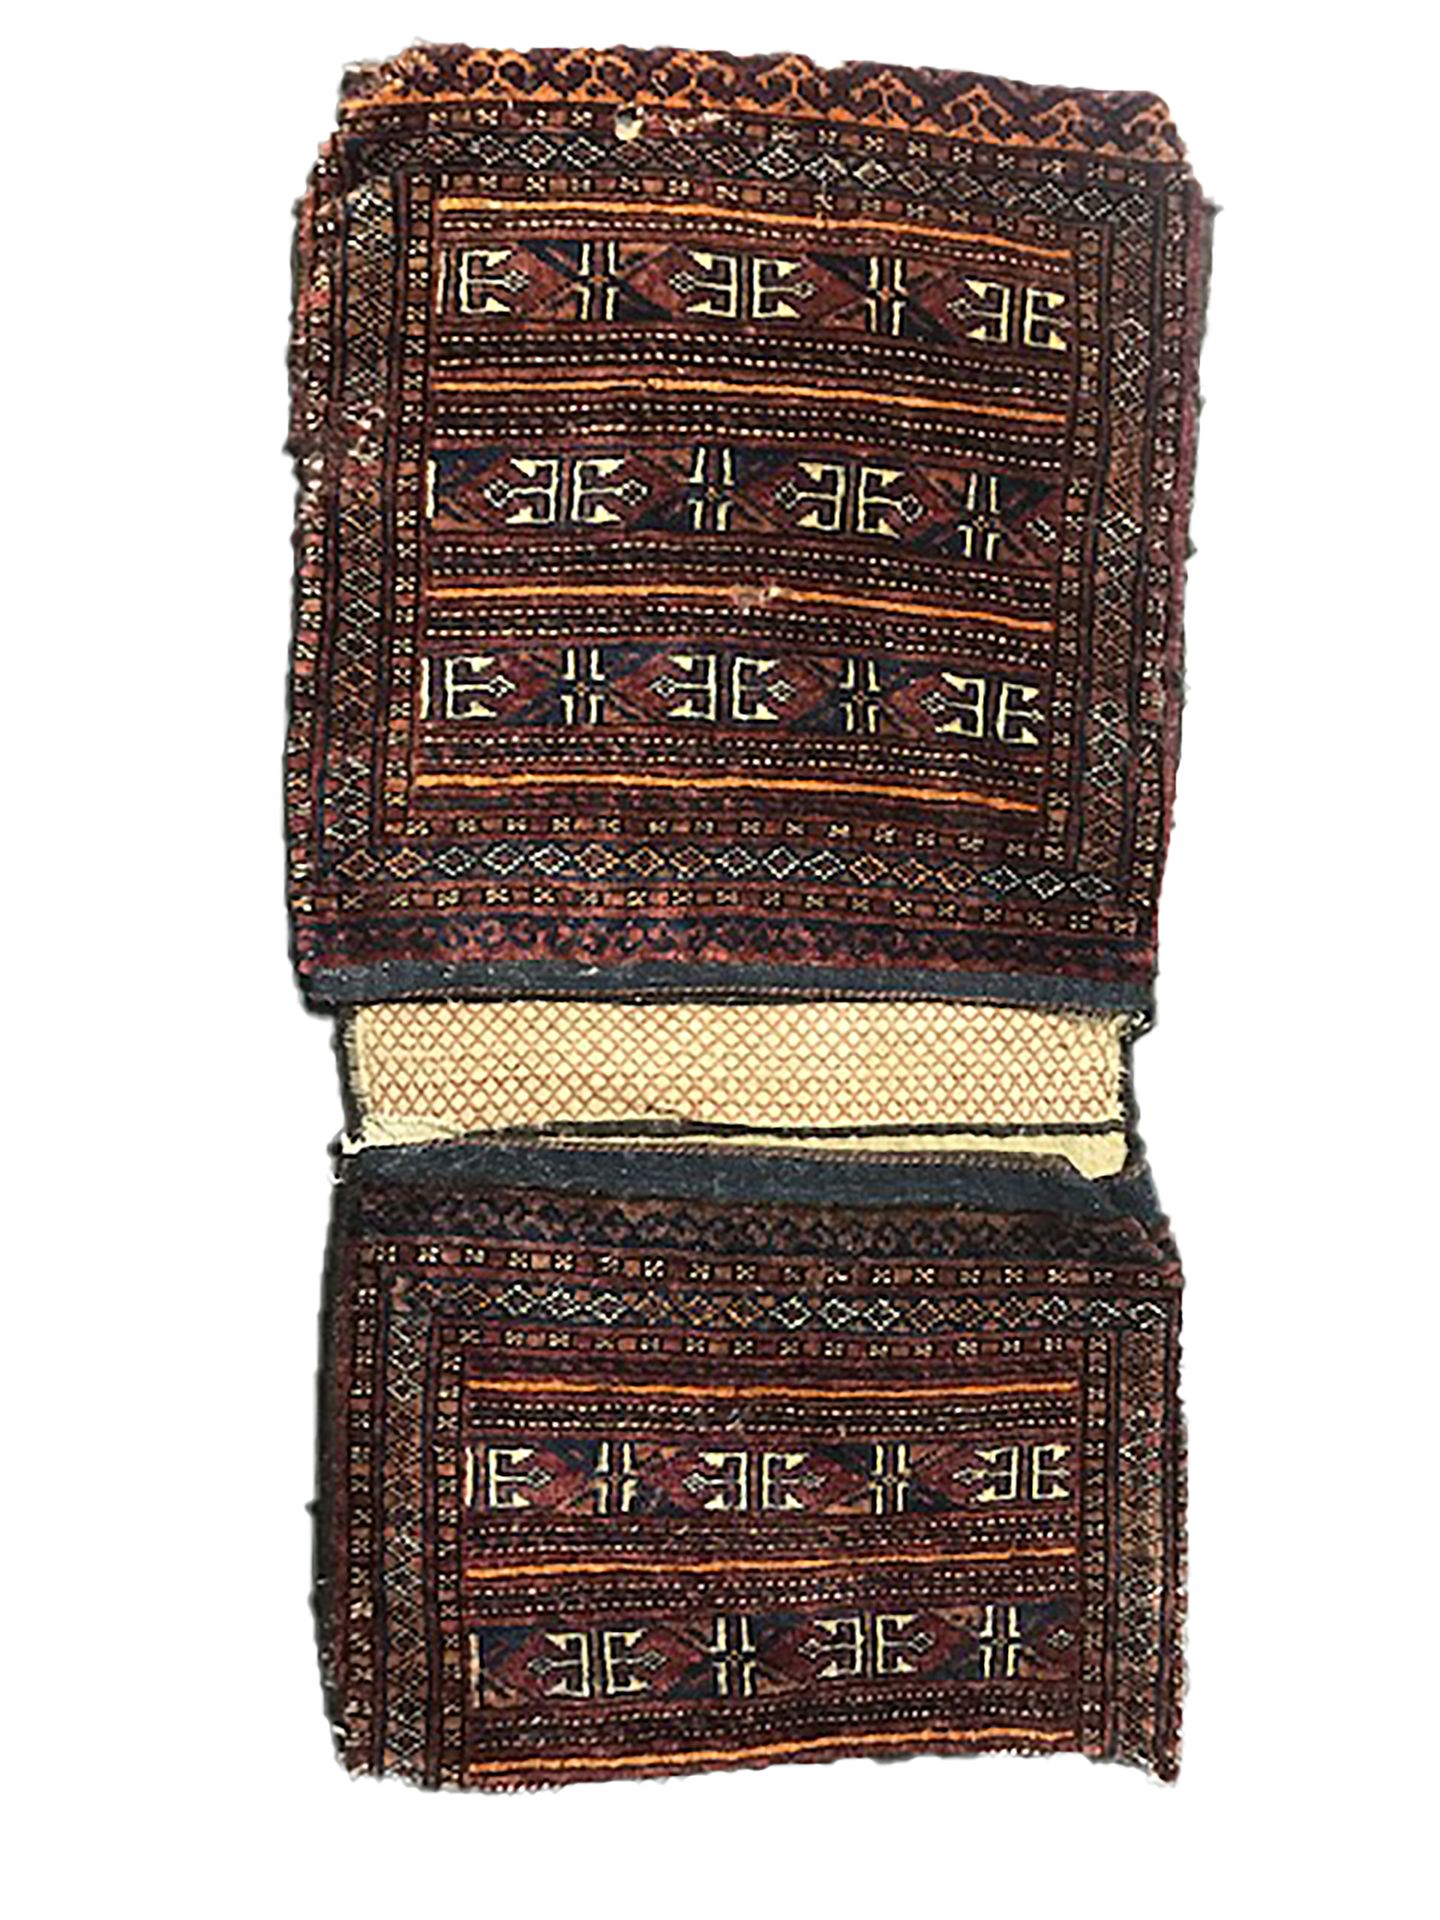 Null 原有的古老的土库曼Bissac，19世纪末

尺寸：98 x 051厘米

技术特征：羊毛基础上的羊毛丝绒

需要注意的小孔

Bayadère装饰：&hellip;